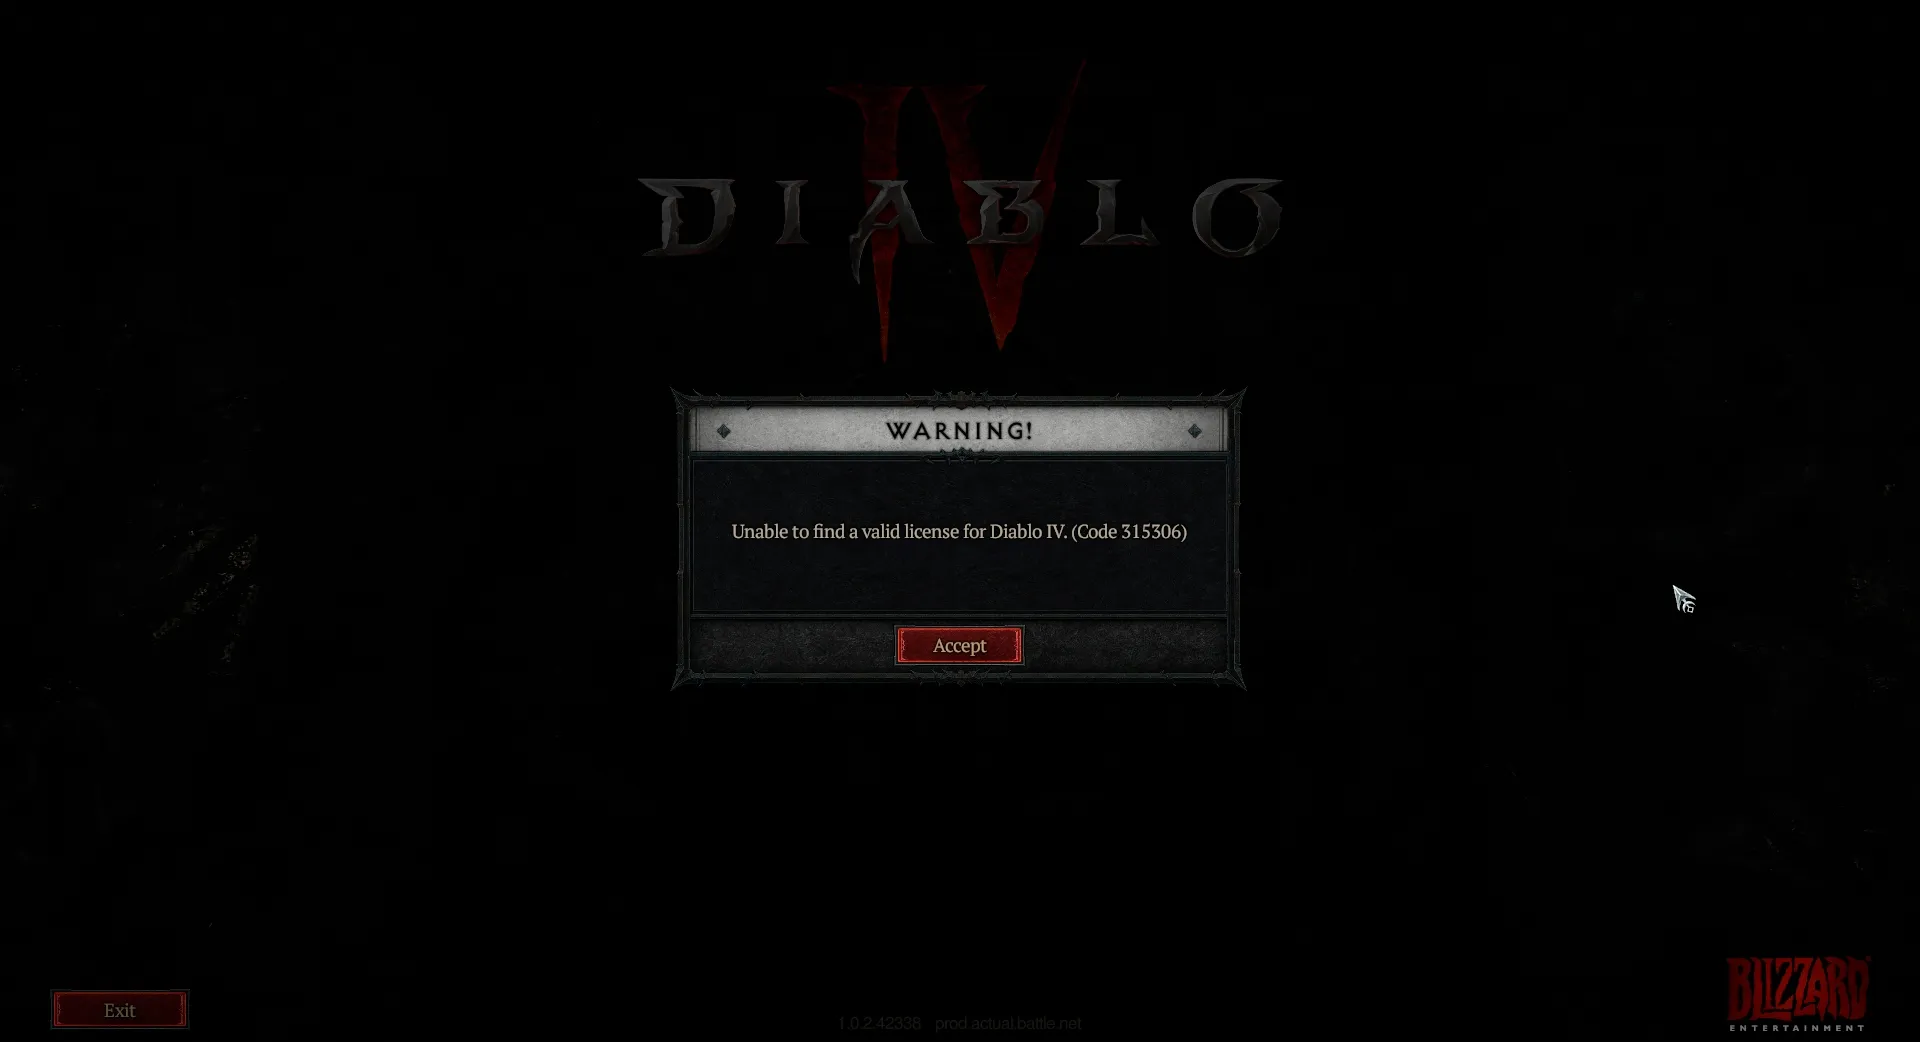 Изображение, показывающее код ошибки 315306, в котором говорится, что Diablo 4